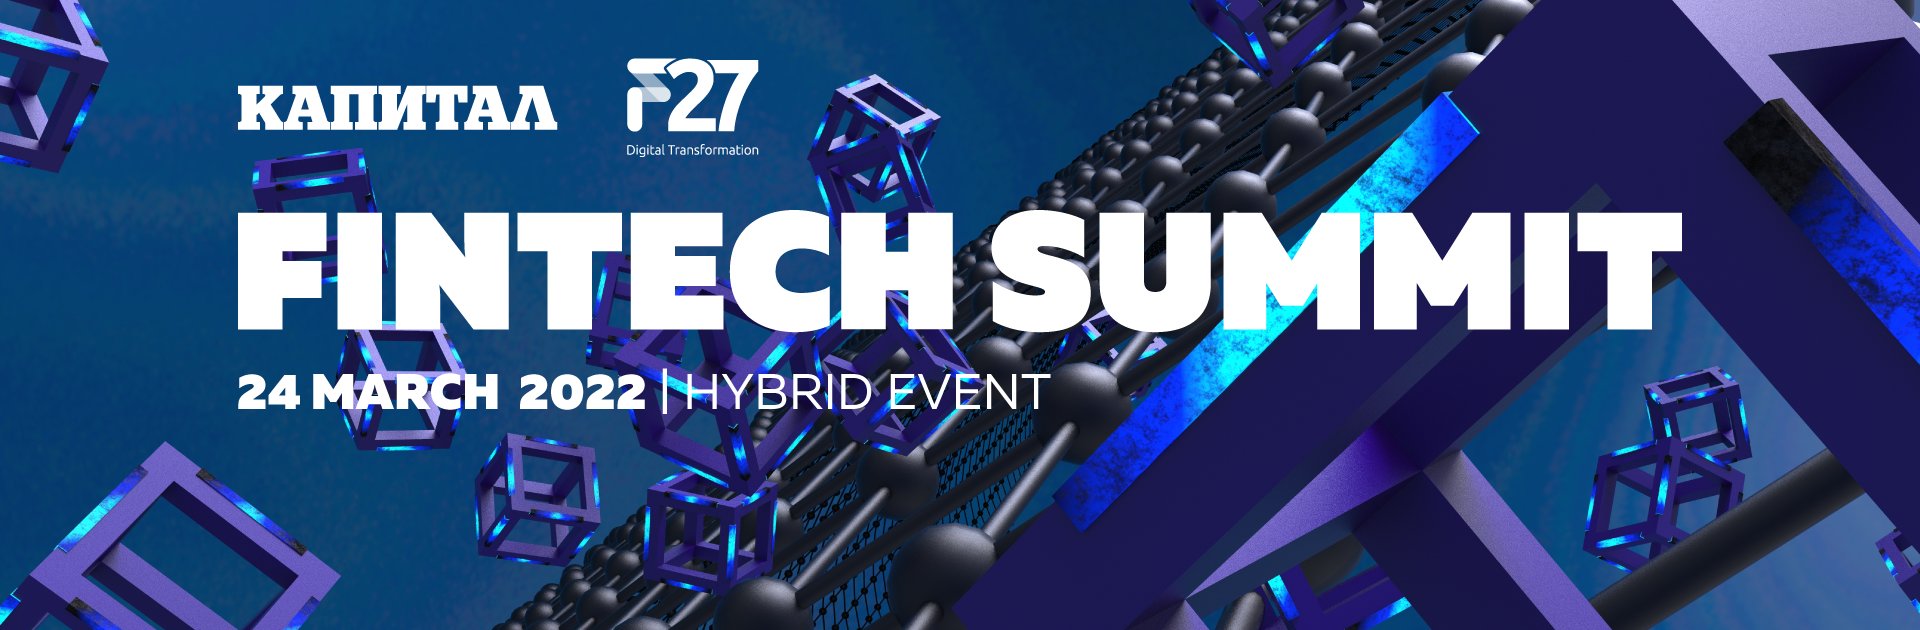 Fintech Summit 2022